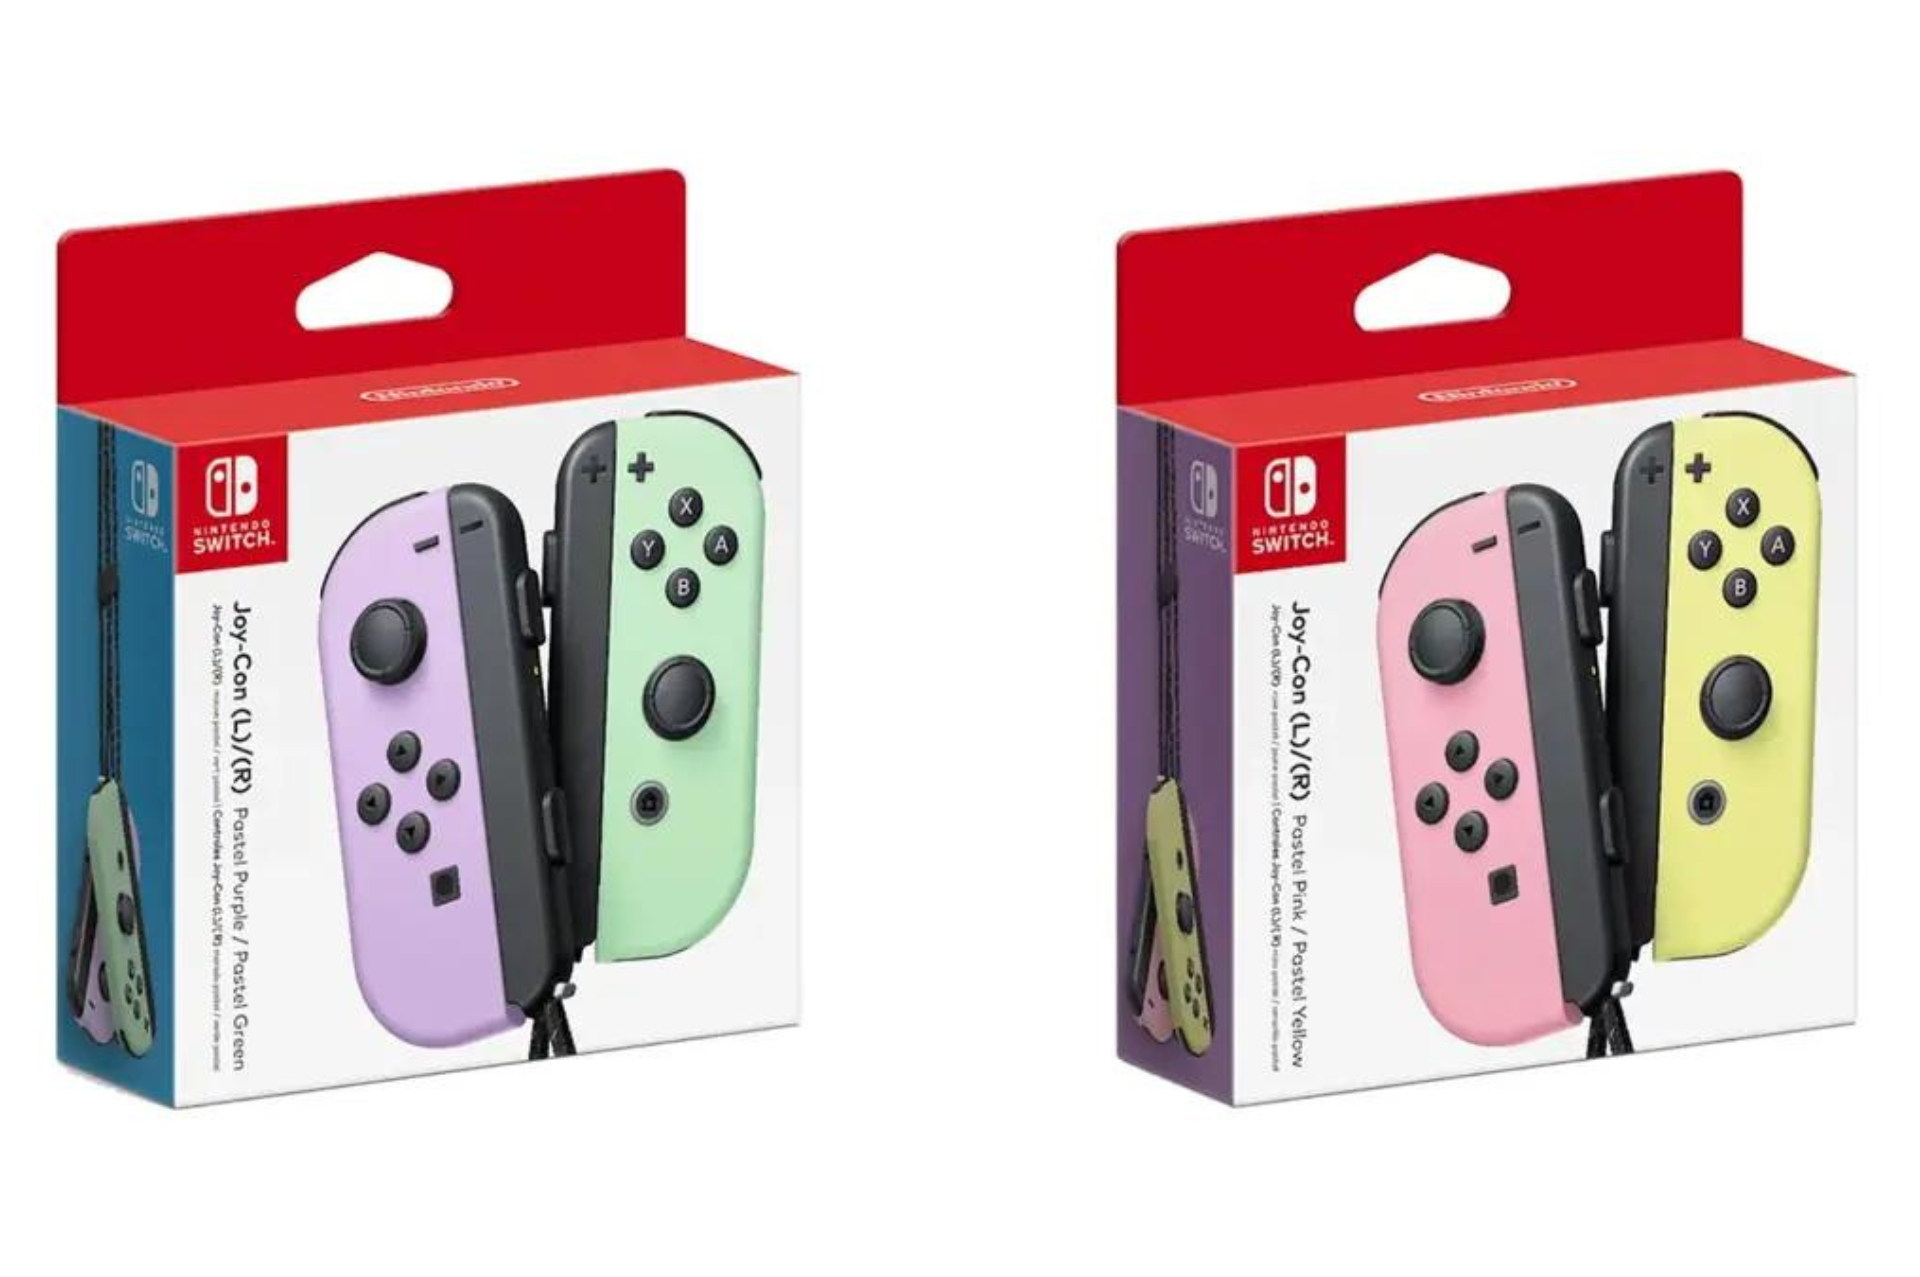 Nintendo revela nuevos colores de Switch Joy-Con